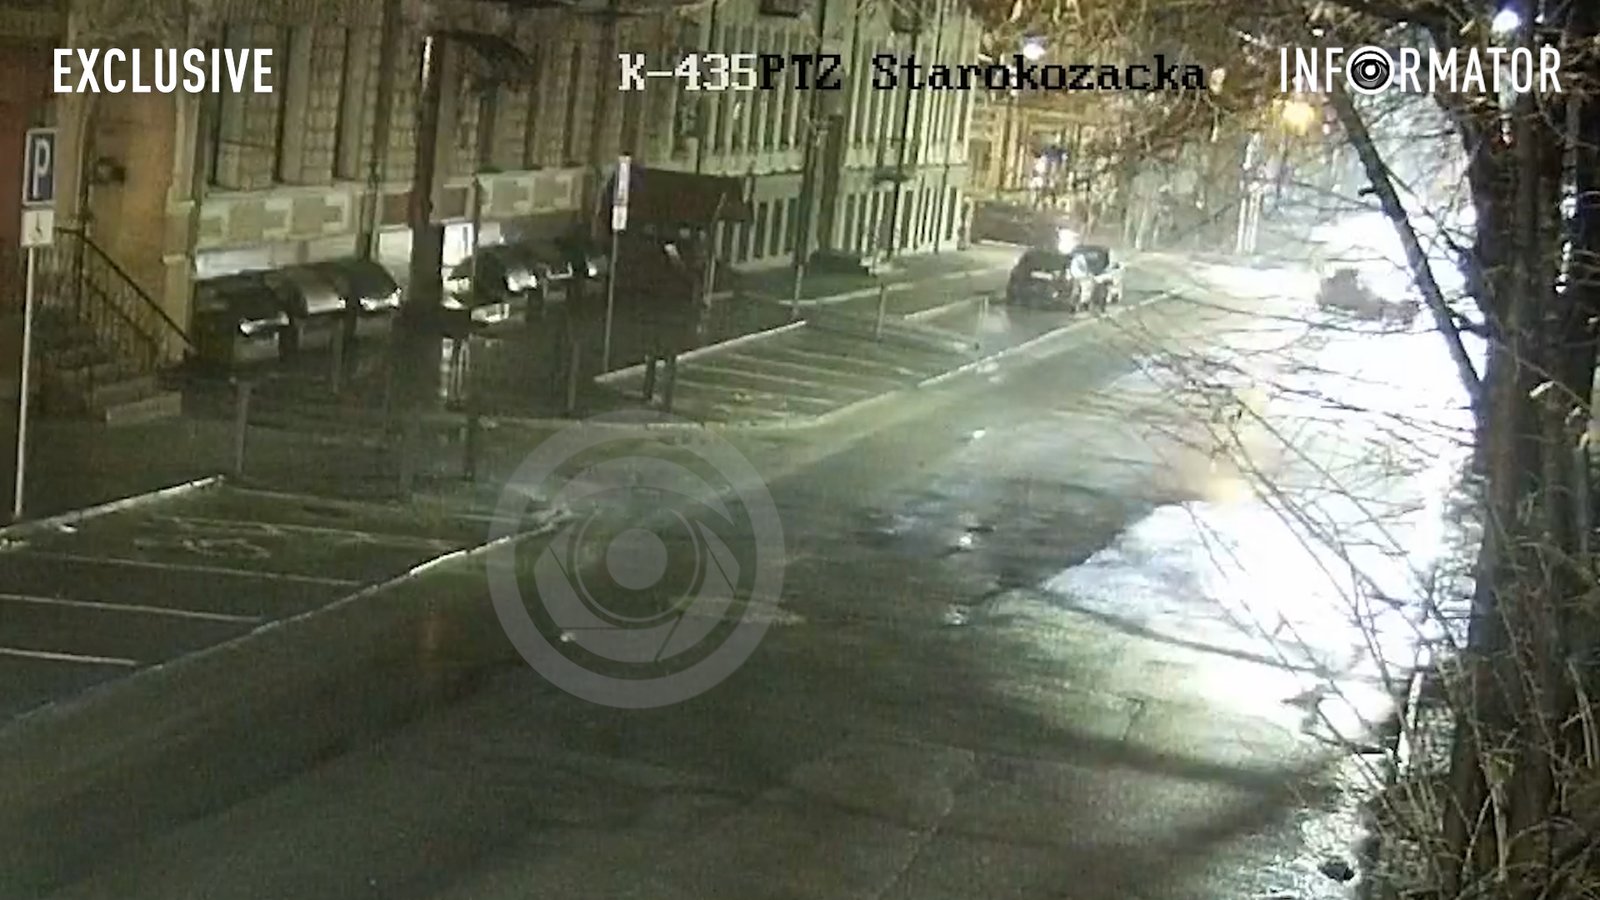 Відео моменту: у Дніпрі на Старокозацькій зіткнулися Renault та Daewoo, є постраждалий